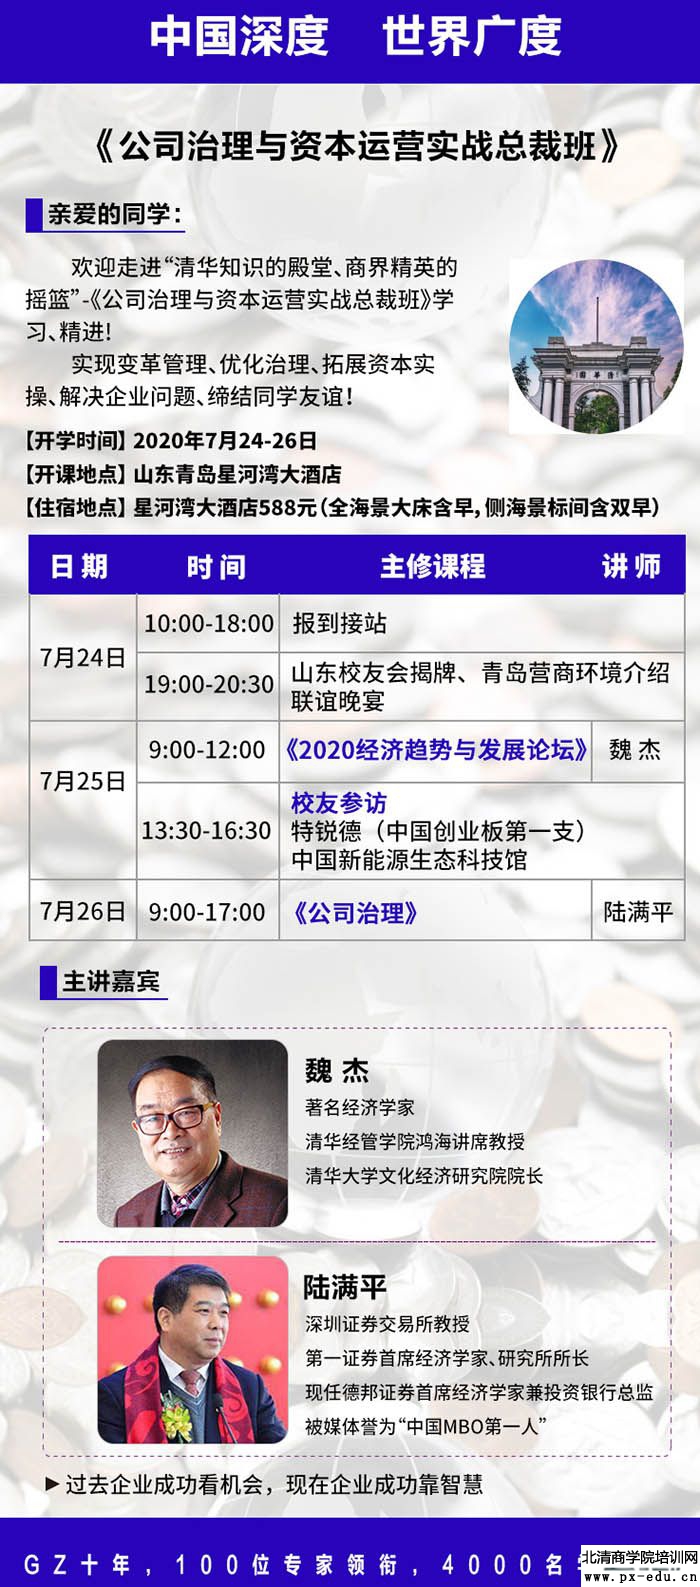 7月25日-26日公司治理与资本运作总裁班青岛开讲